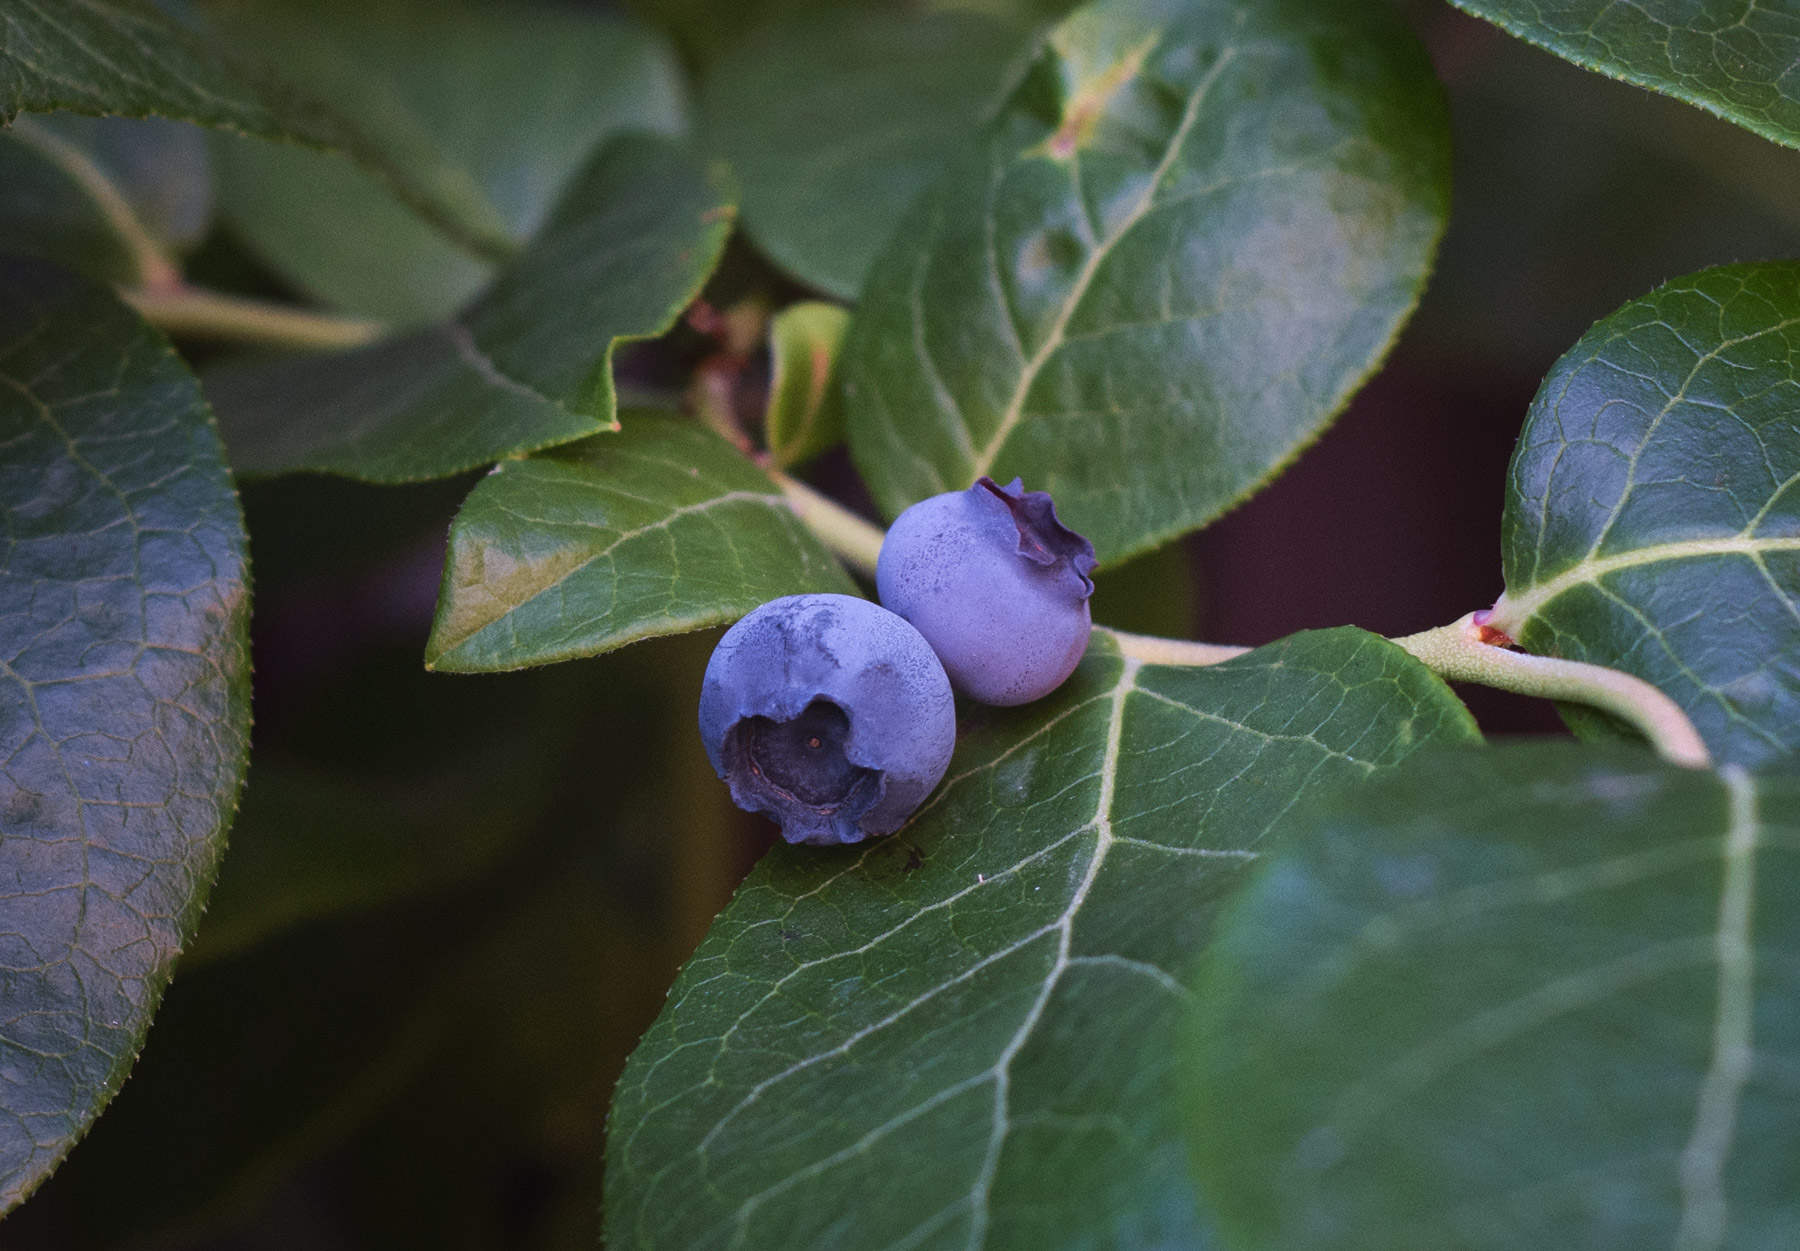 Pair of blueberries